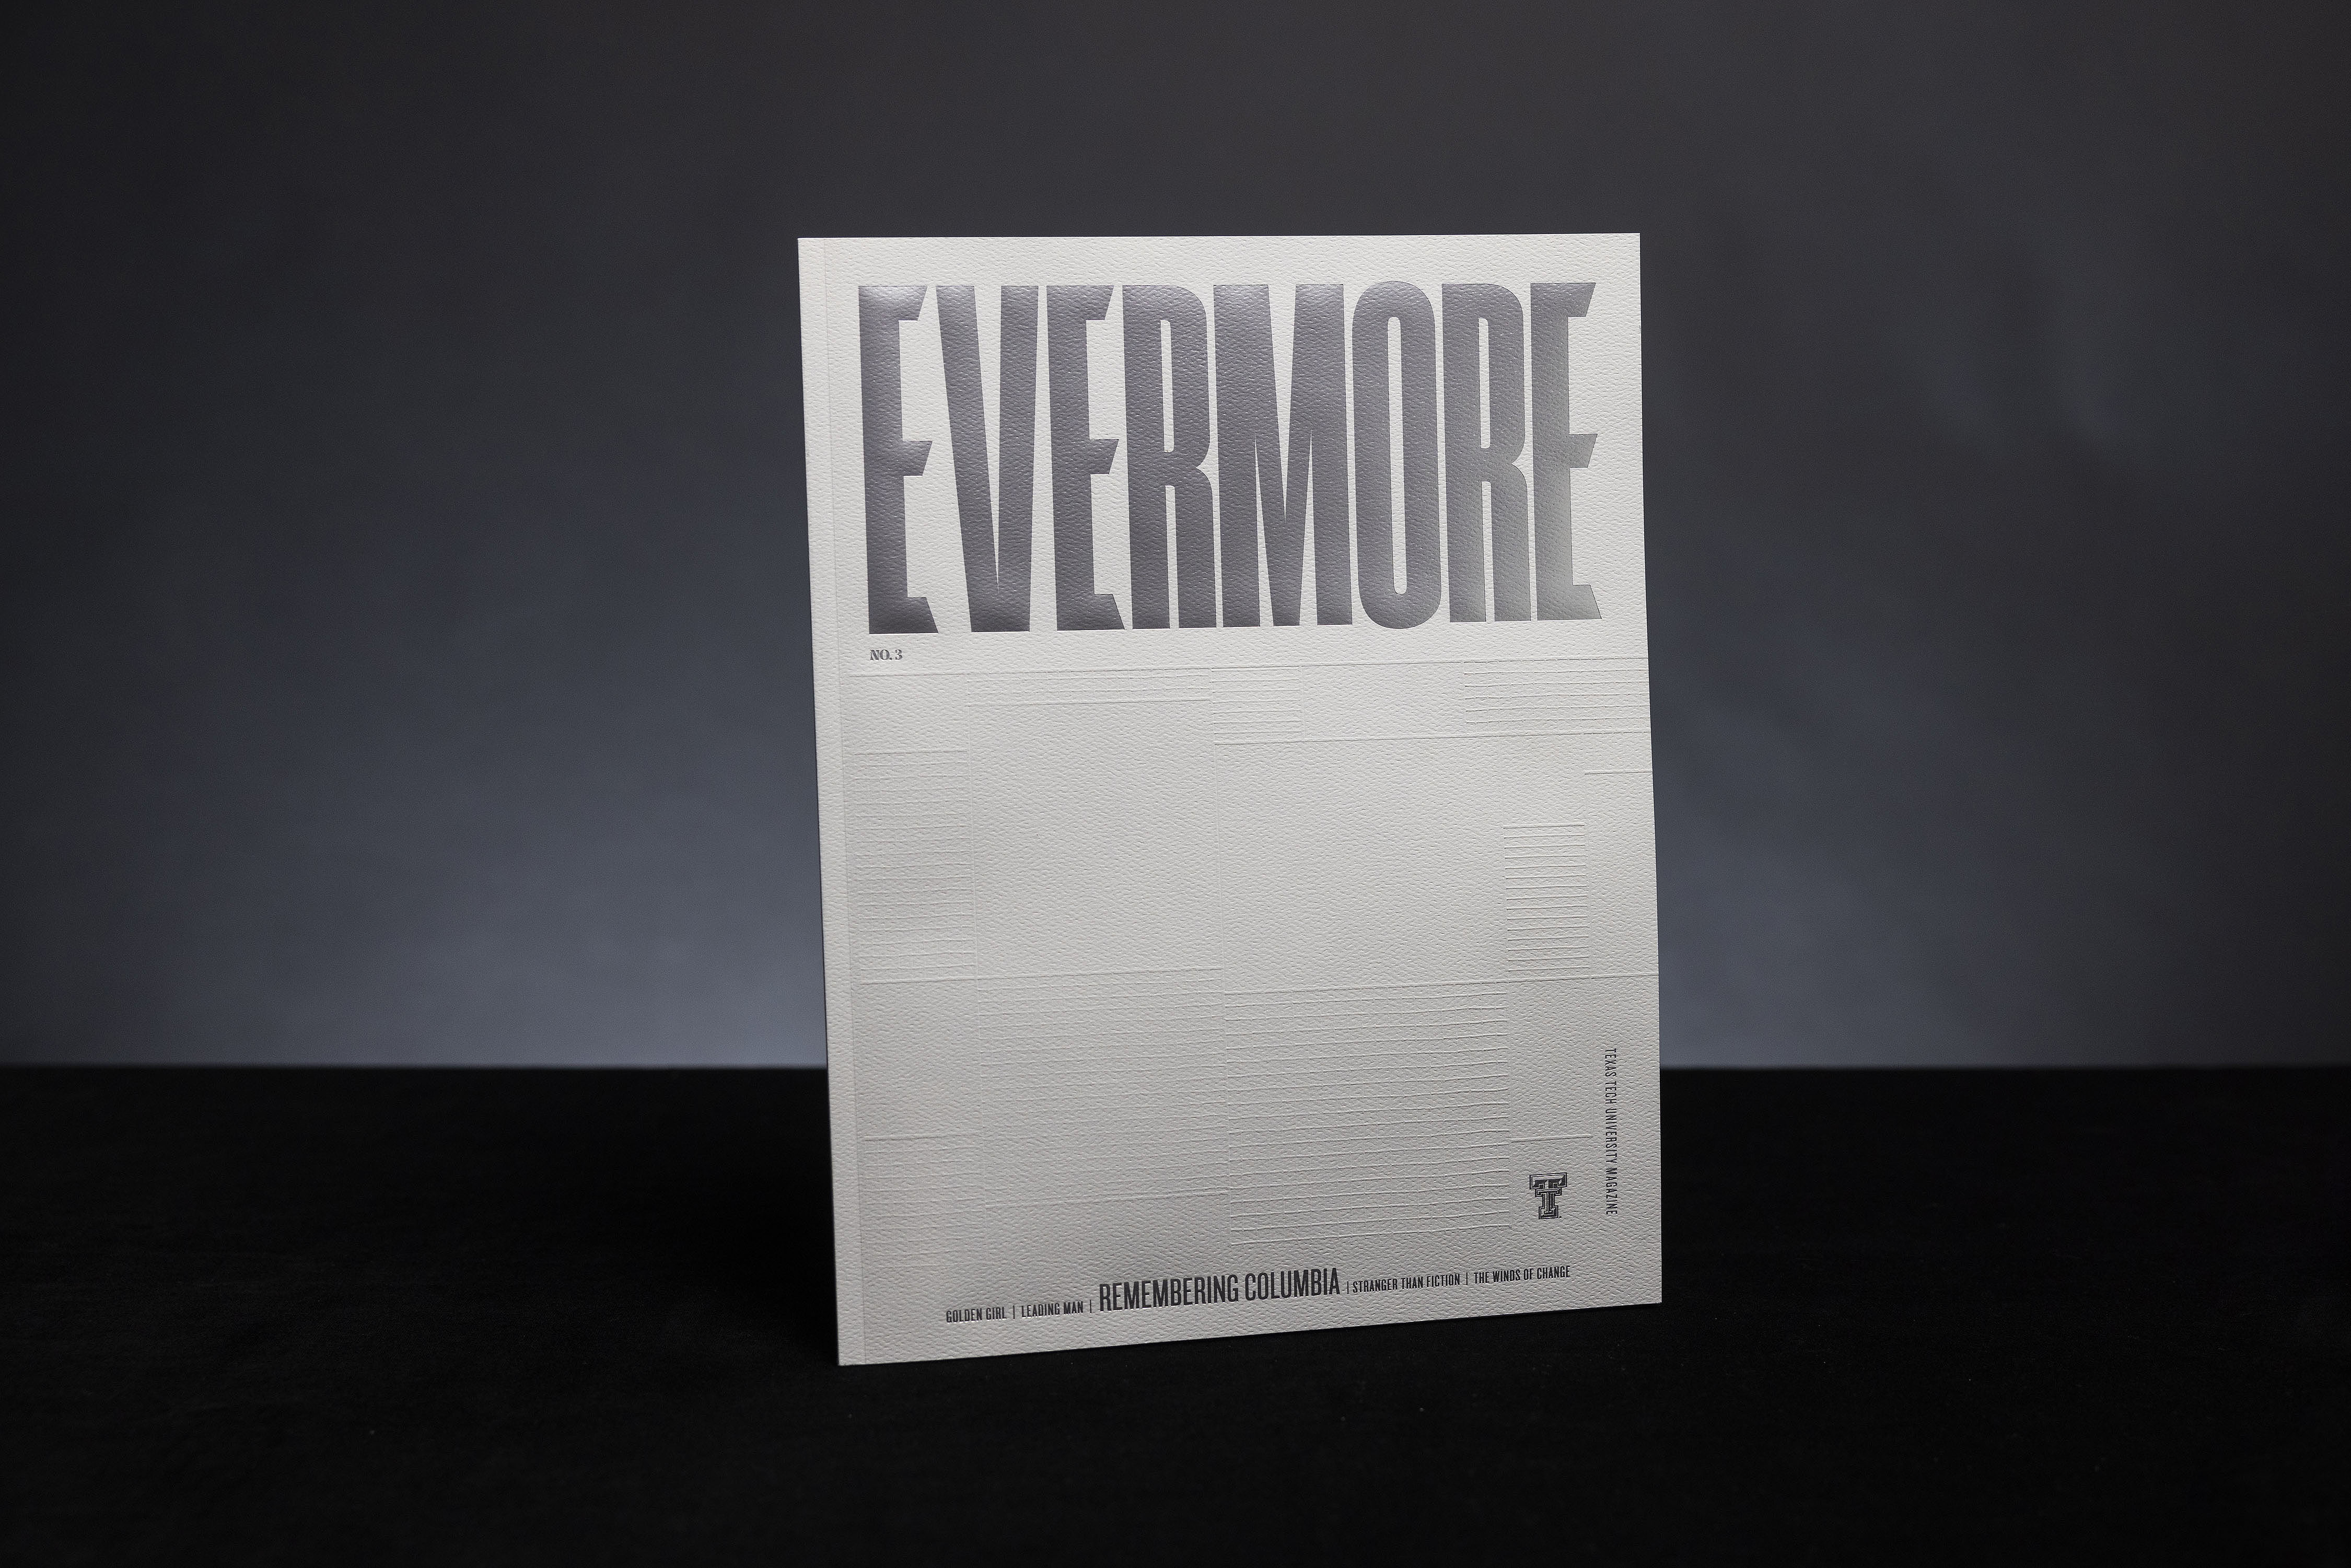 Evermore No. 3